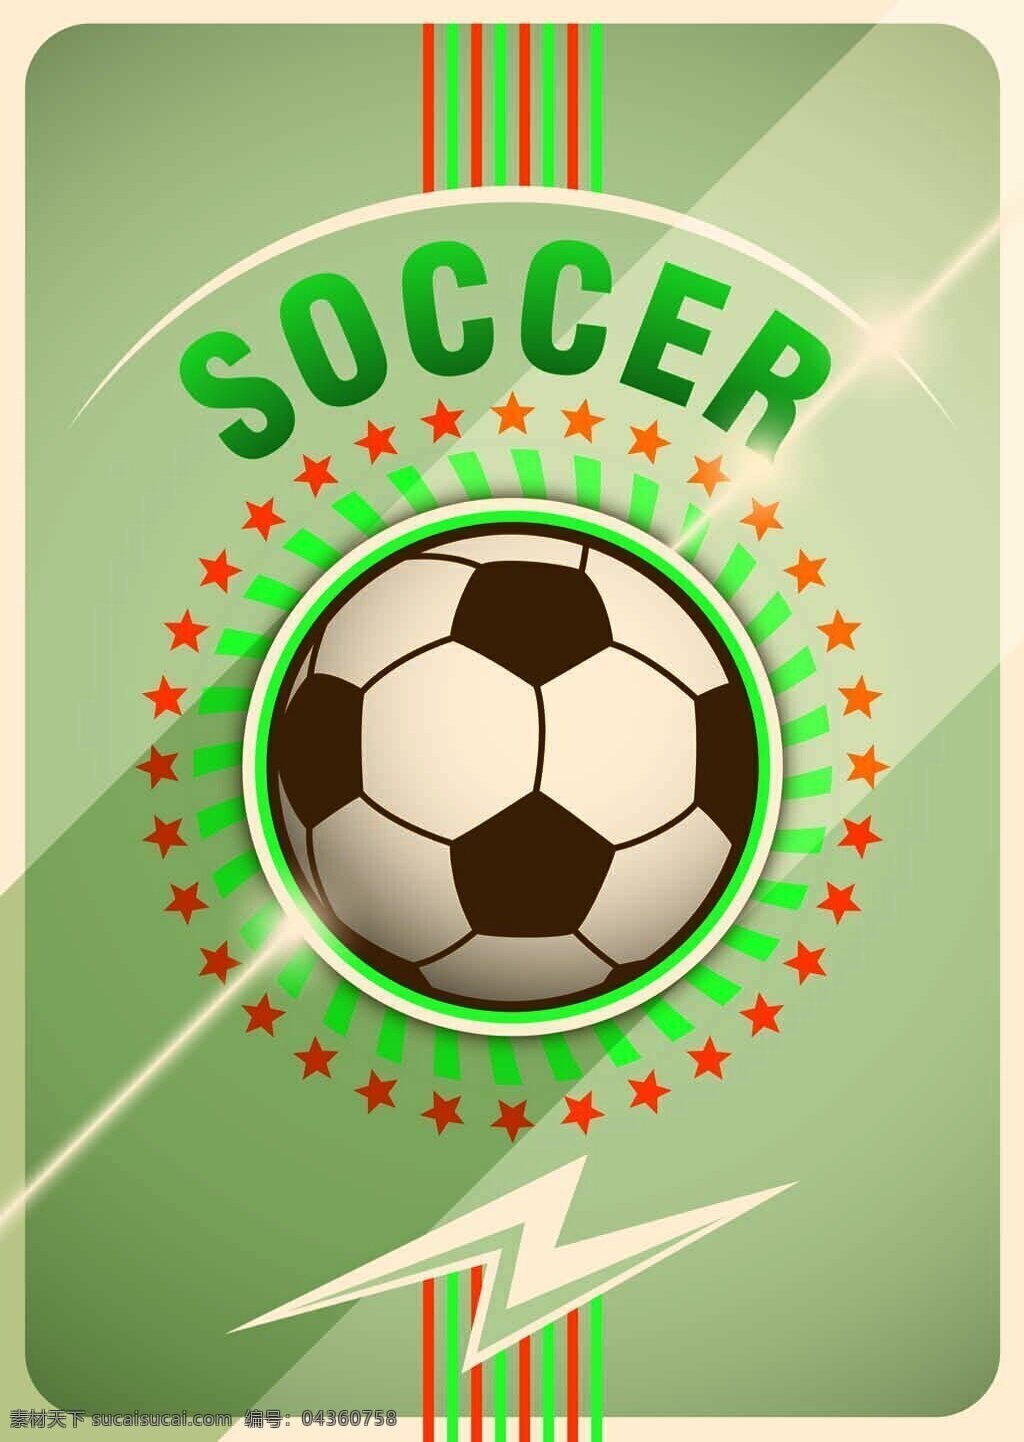 矢量 绿色 背景 足球 足球海报 足球矢量素材 矢量足球 闪电 卡通足球海报 扁平化足球 复古足球海报